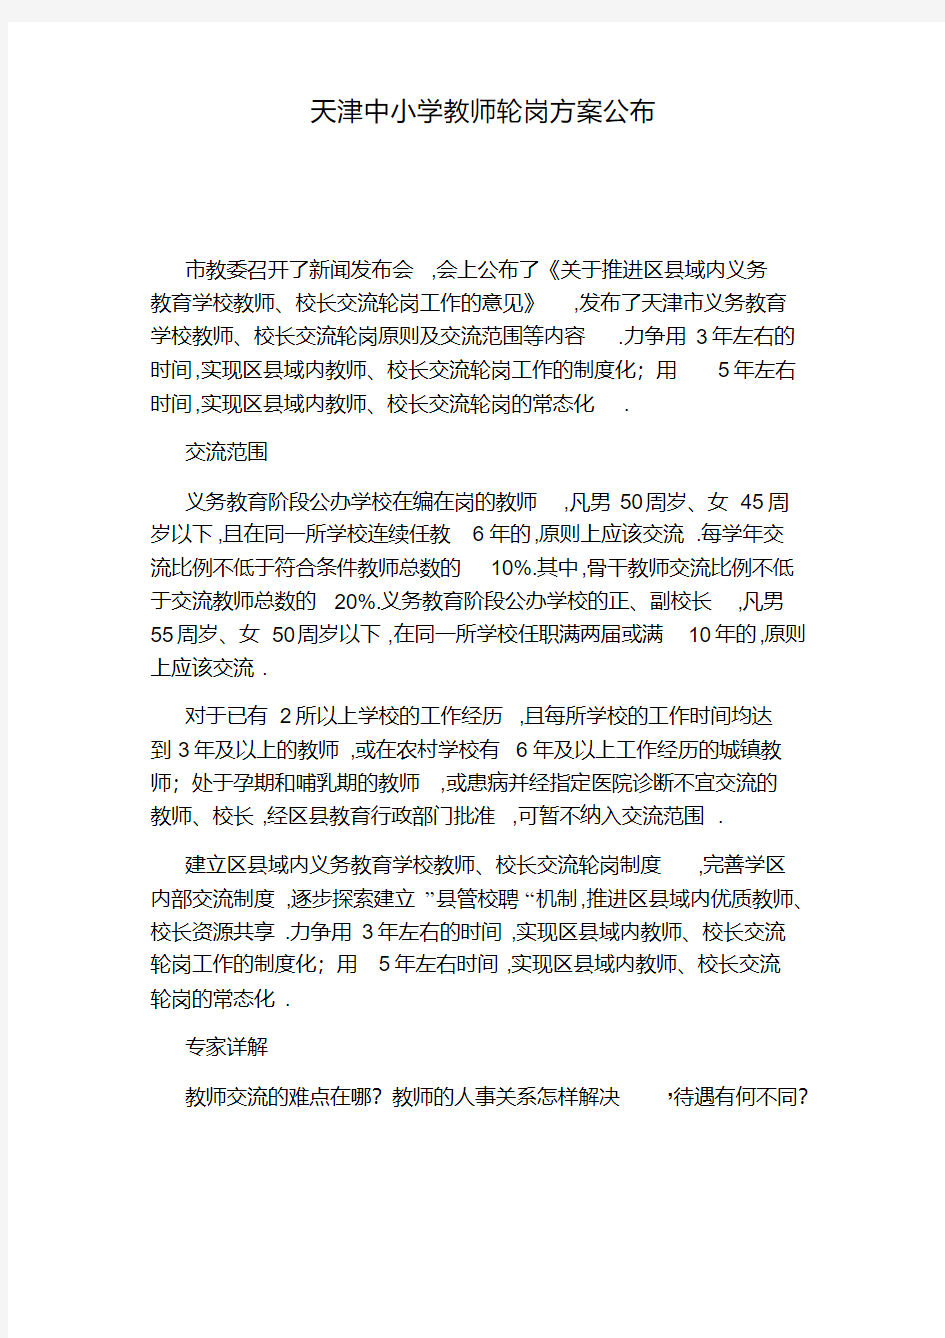 天津中小学教师轮岗方案公布